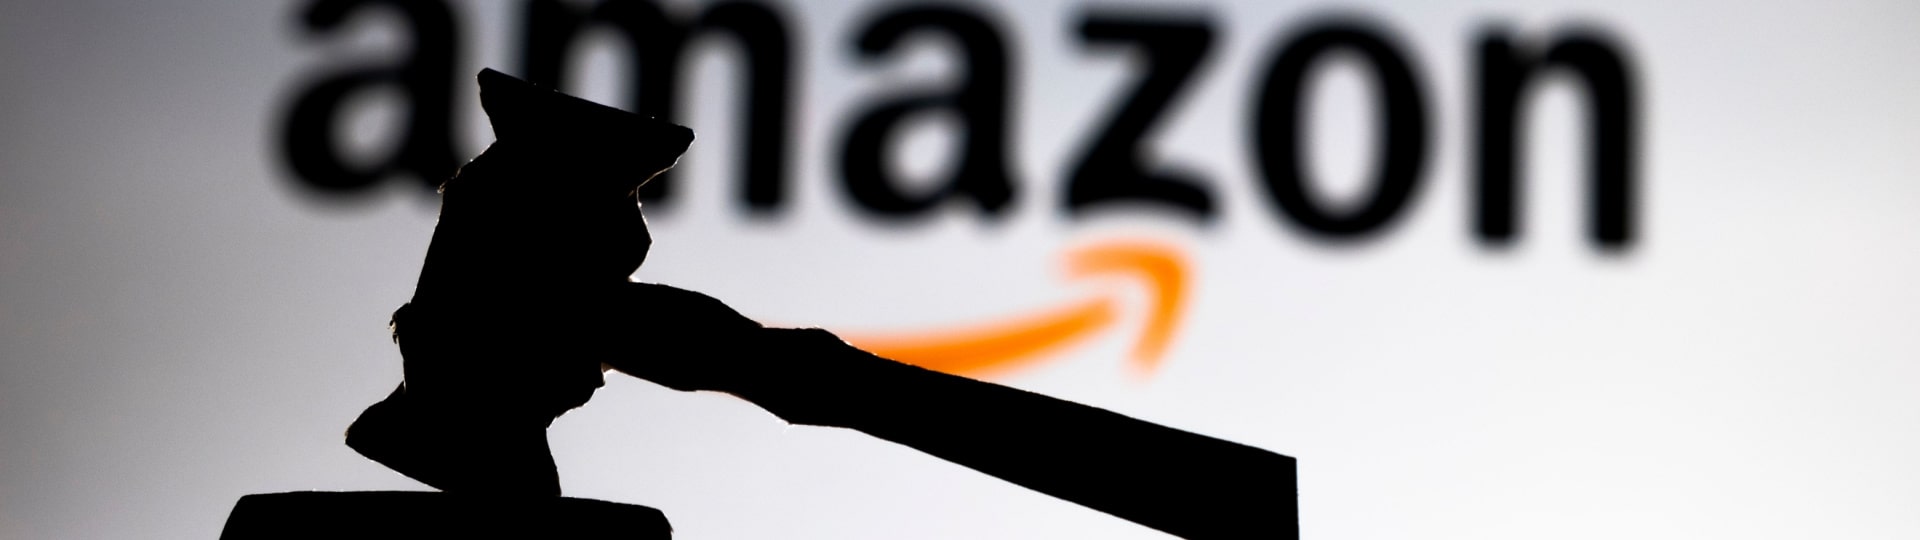 Americká obchodní komise podala antimonopolní žalobu na Amazon